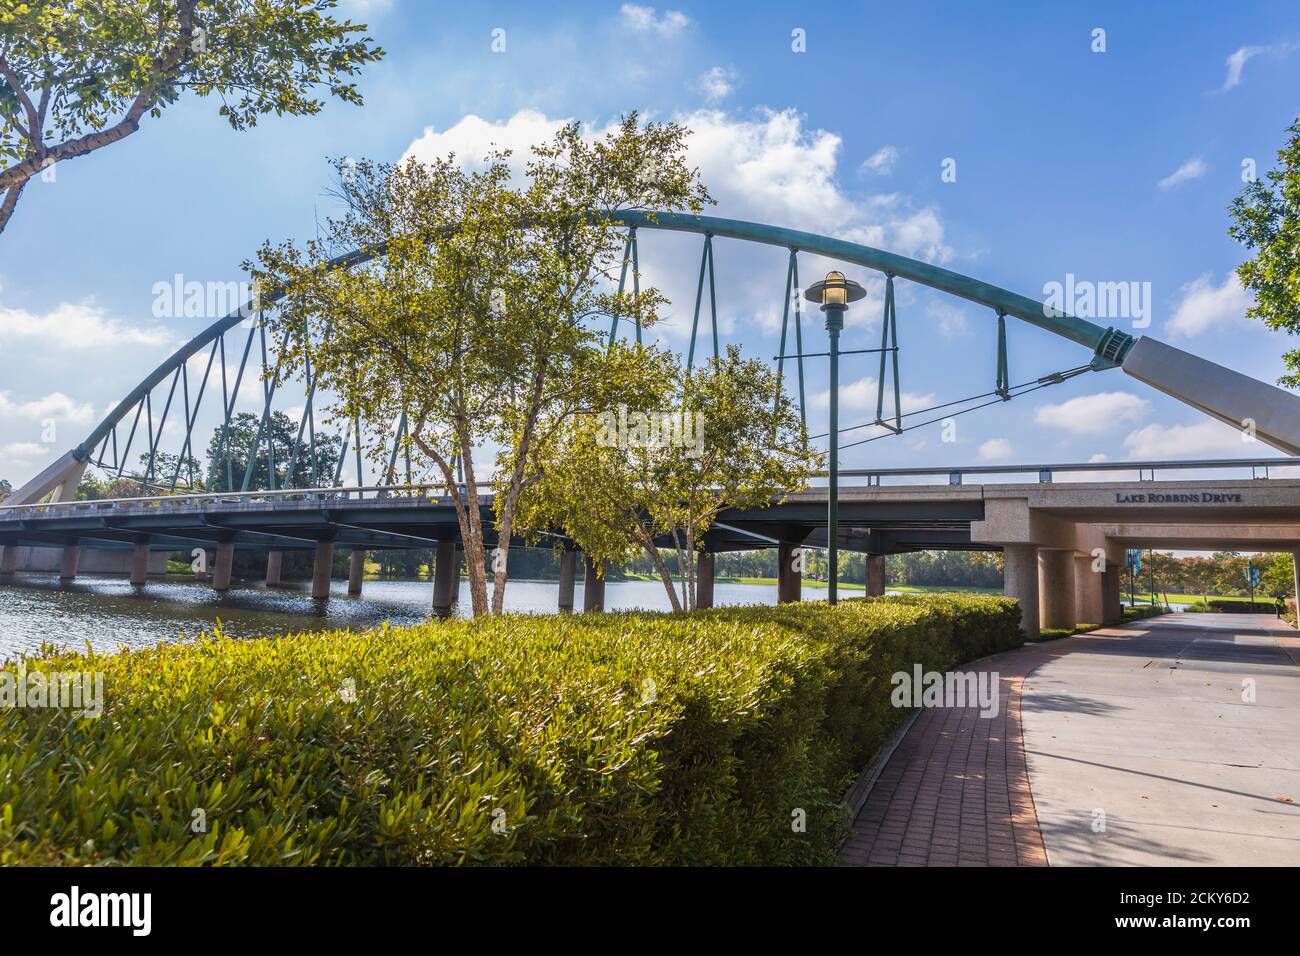 Lake Robbins Drive Bridge à la voie navigable de Woodlands, dans les Woodlands, Texas. Banque D'Images